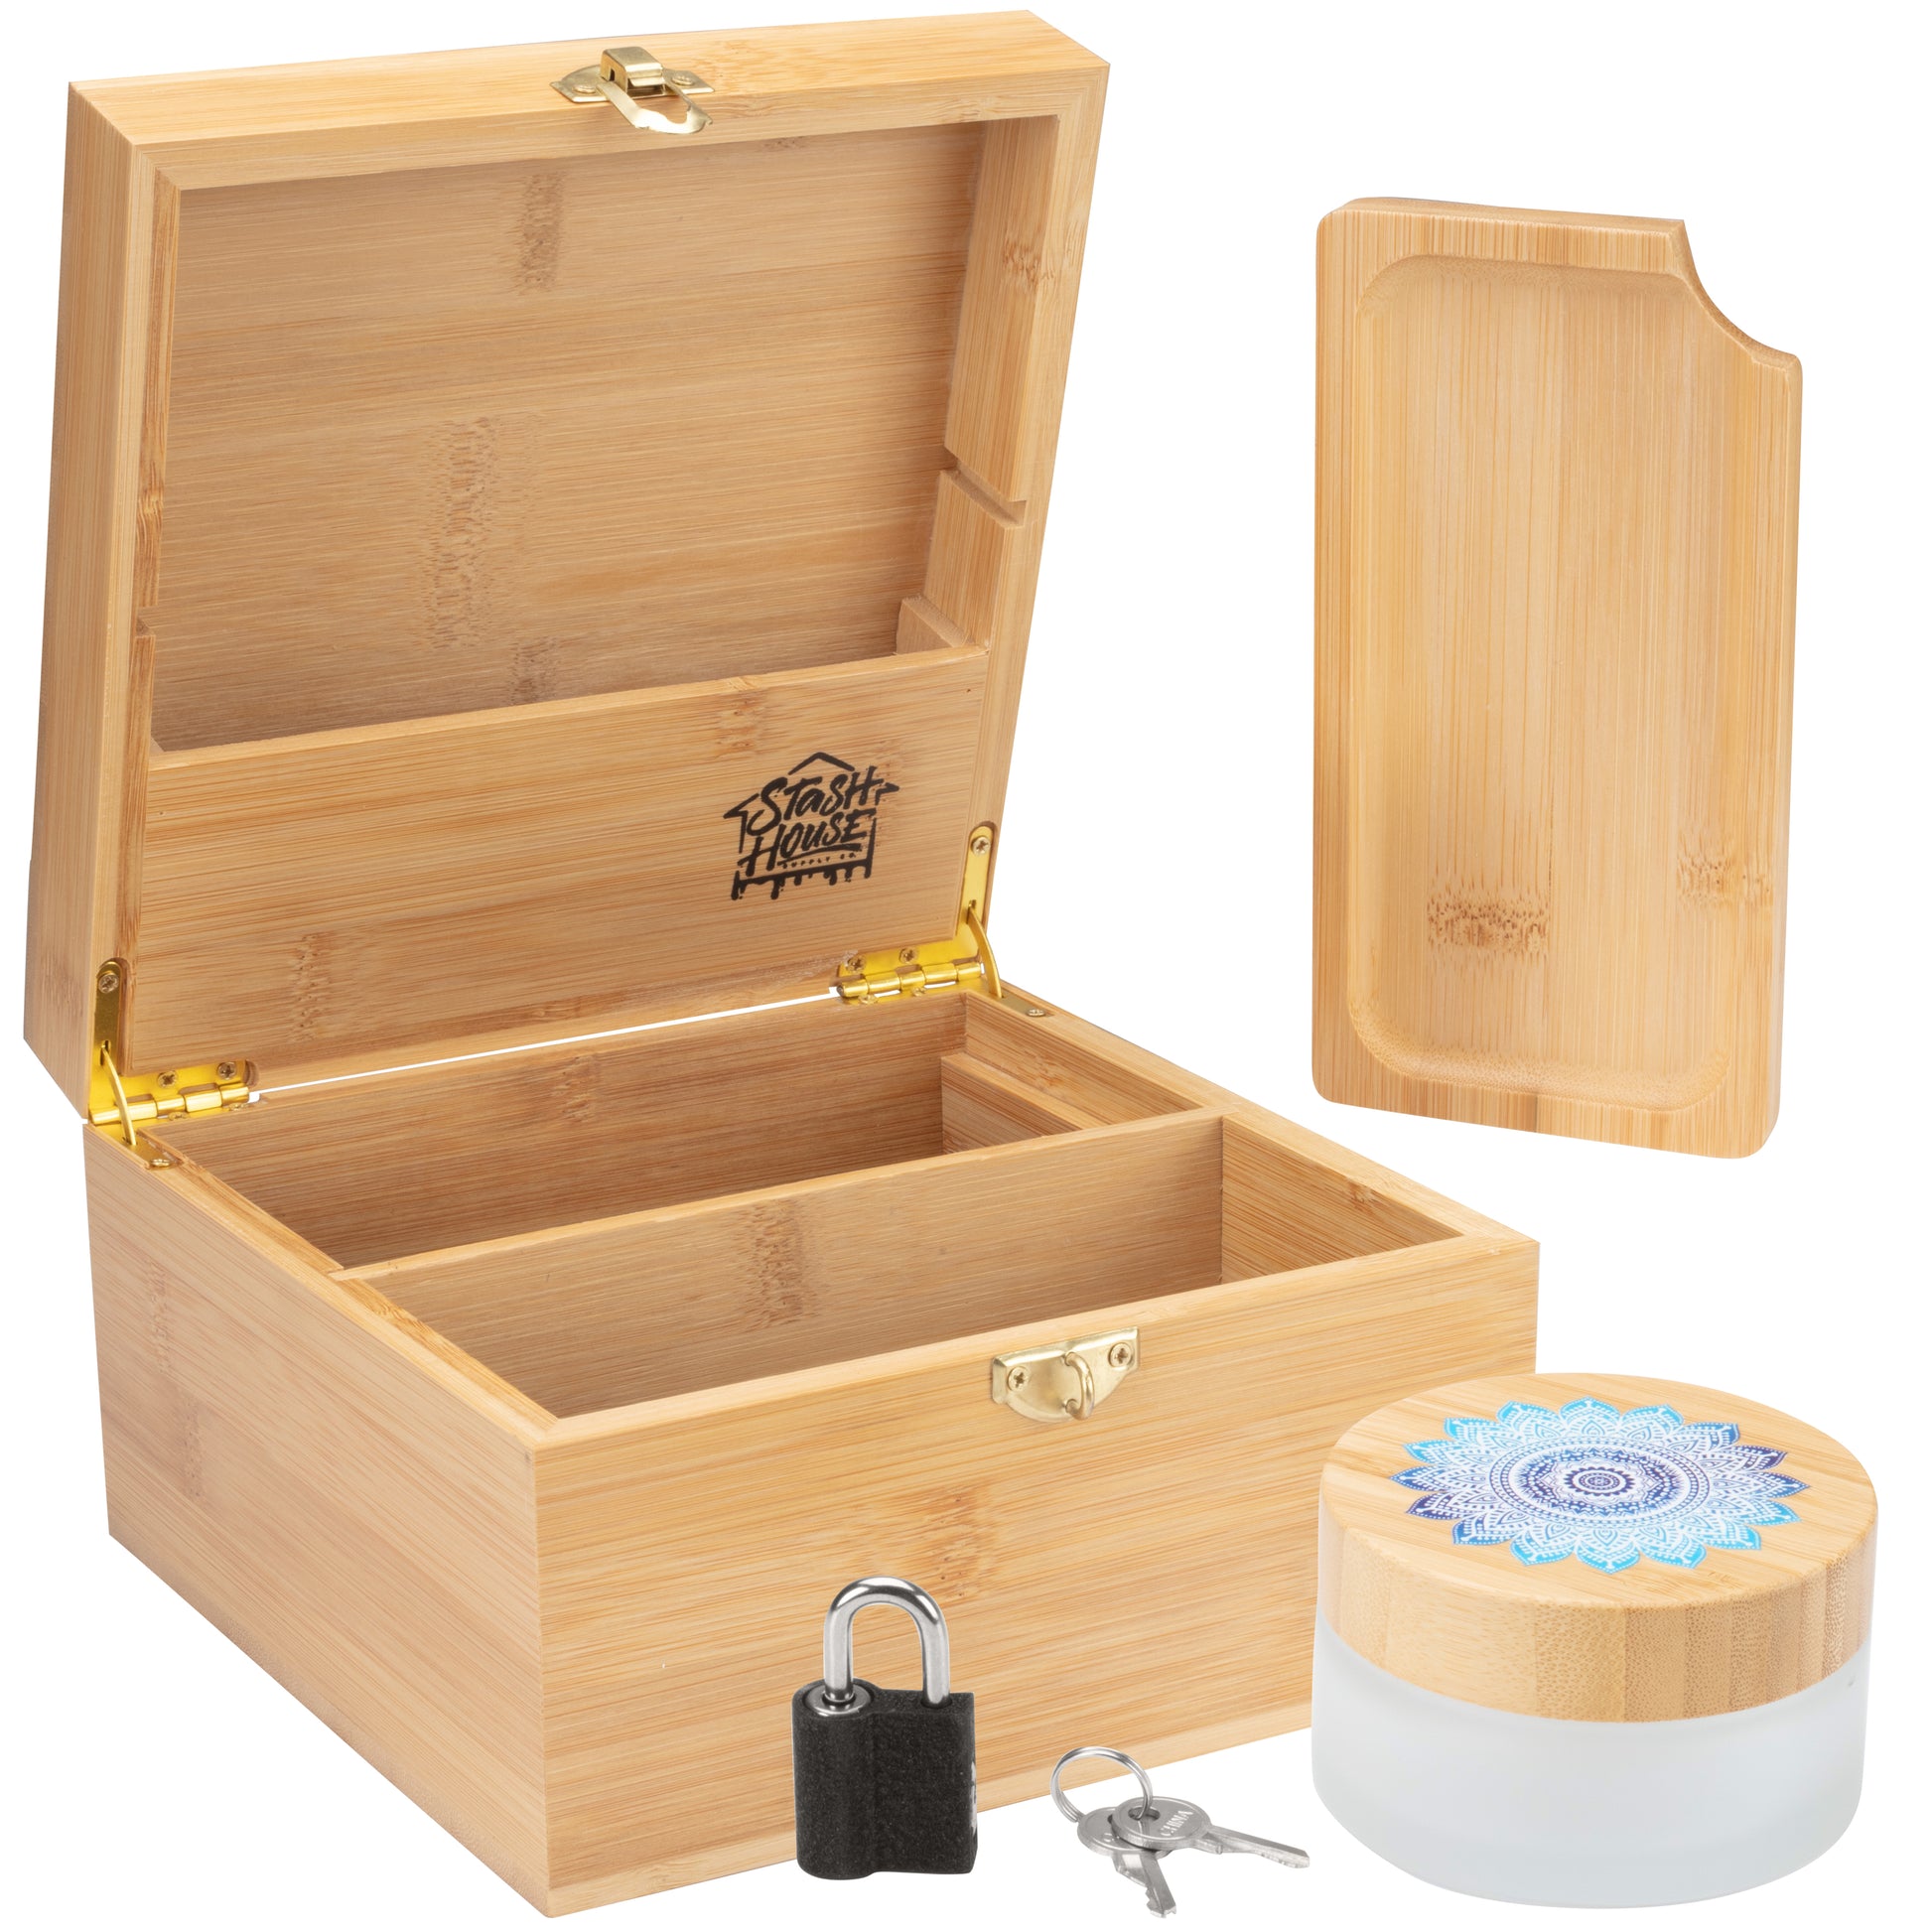 Blue Mandala - Premium Bamboo Stash Box with Metal Padlock and